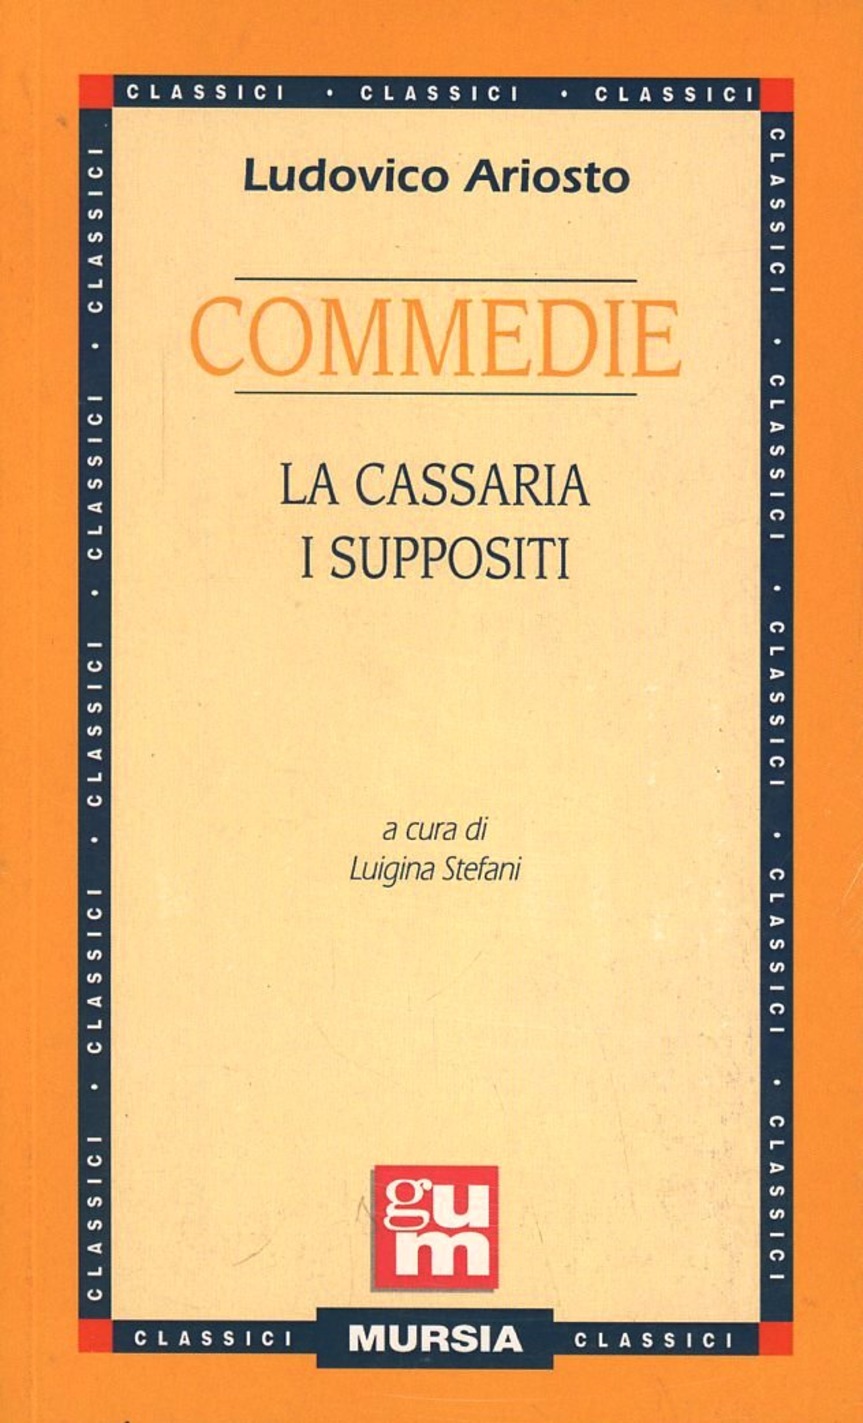 Commedie: La cassaria - I suppositi